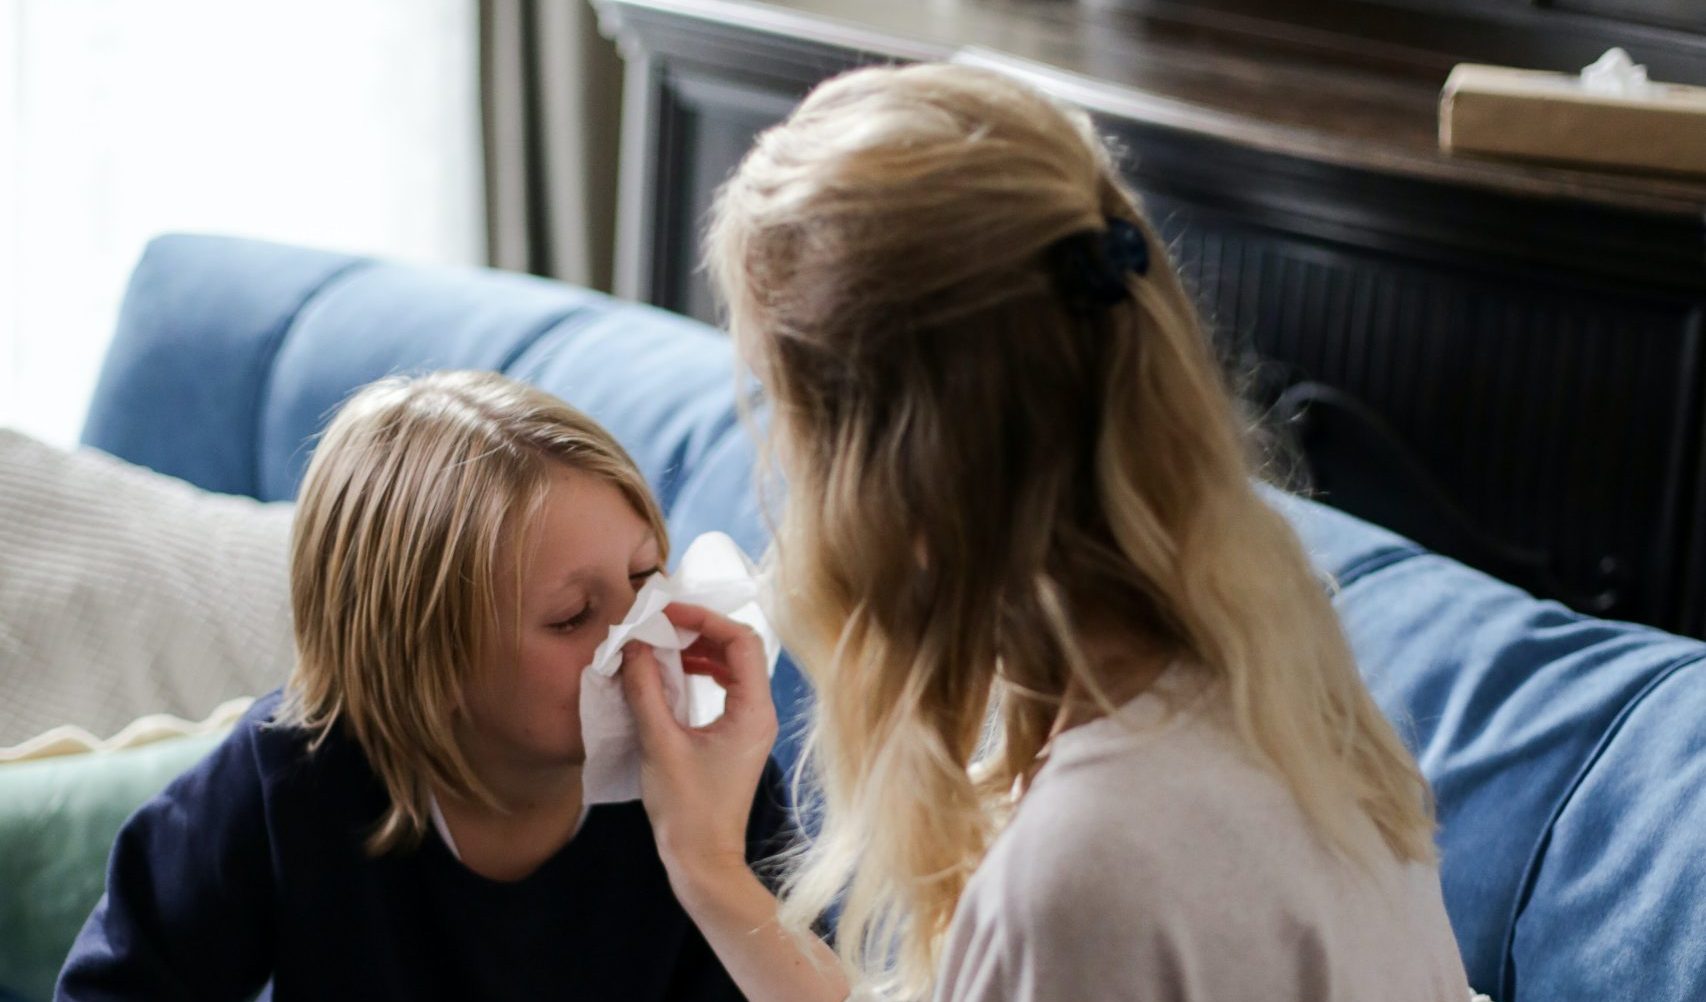 childrens seasonal allergies